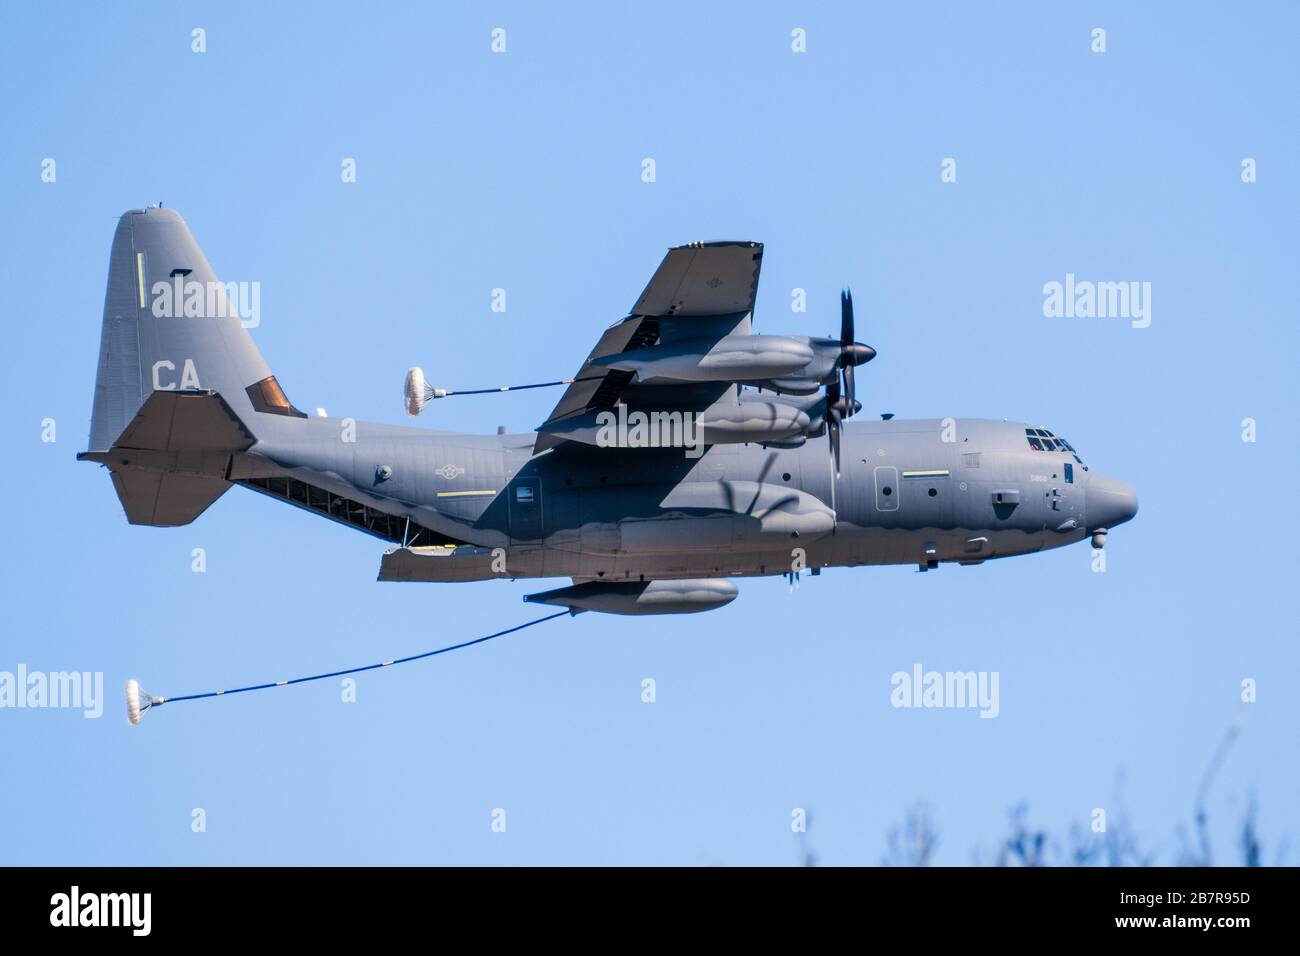 29 févr. 2020 Mountain View / va / USA - Lockheed Martin HC-130 J avion militaire Hercules effectuant des exercices de ravitaillement en air près de Moffett Federal Air Banque D'Images